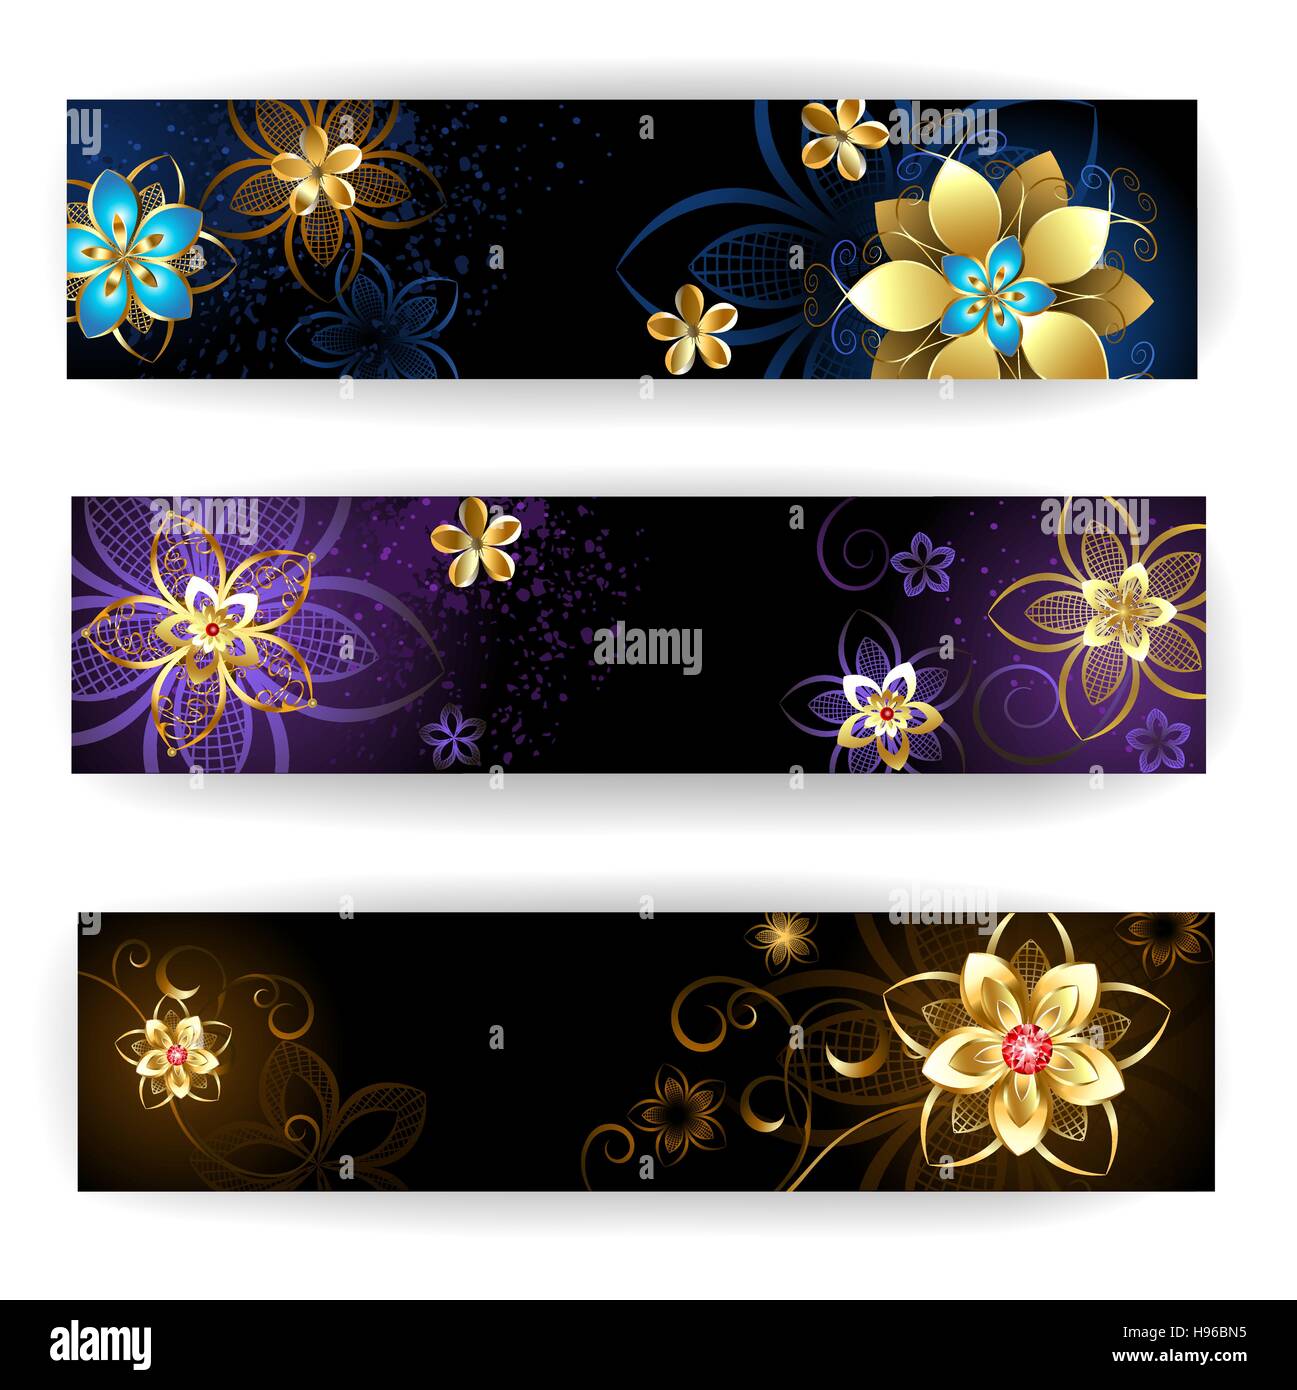 drei horizontale Banner mit Goldschmuck, abstrakte Blumen auf dunklem Braun und lila Hintergrund. Stock Vektor